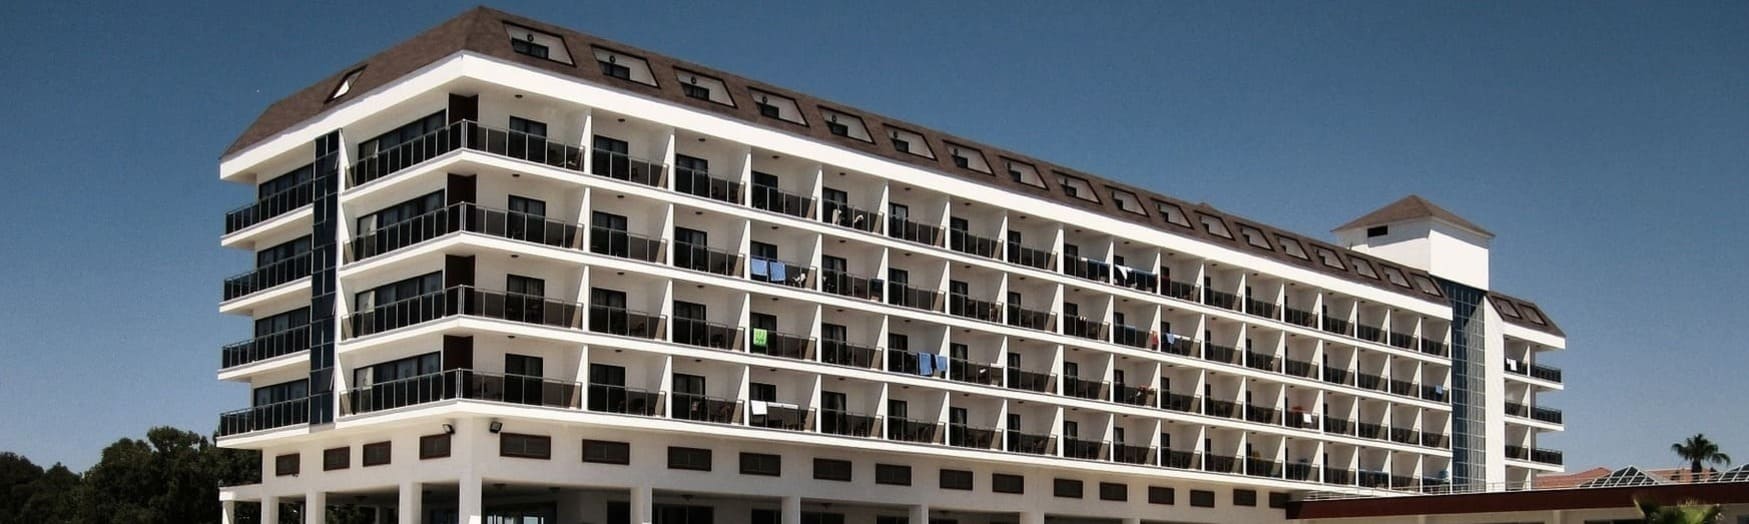 Απολύμανση ξενοδοχείων | απεντόμωση ξενοδοχείων στην Αθήνα με φθηνές τιμές.